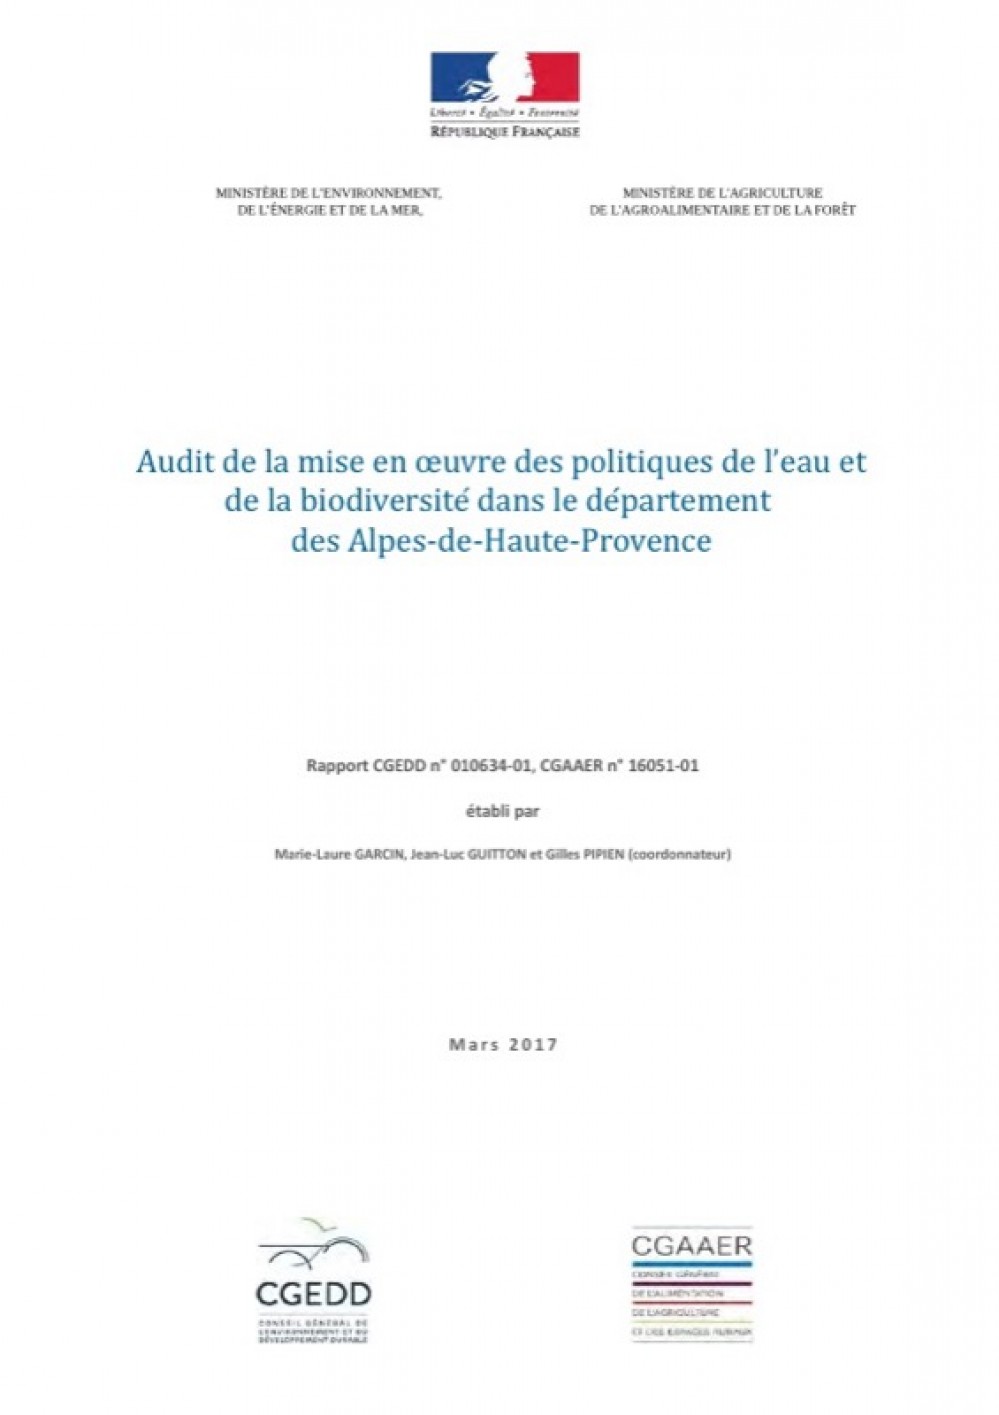 [Publication] Audit de la mise en oeuvre des politiques de l’eau et de la biodiversité dans le département des Alpes-de-Haute-Provence - CGEDD